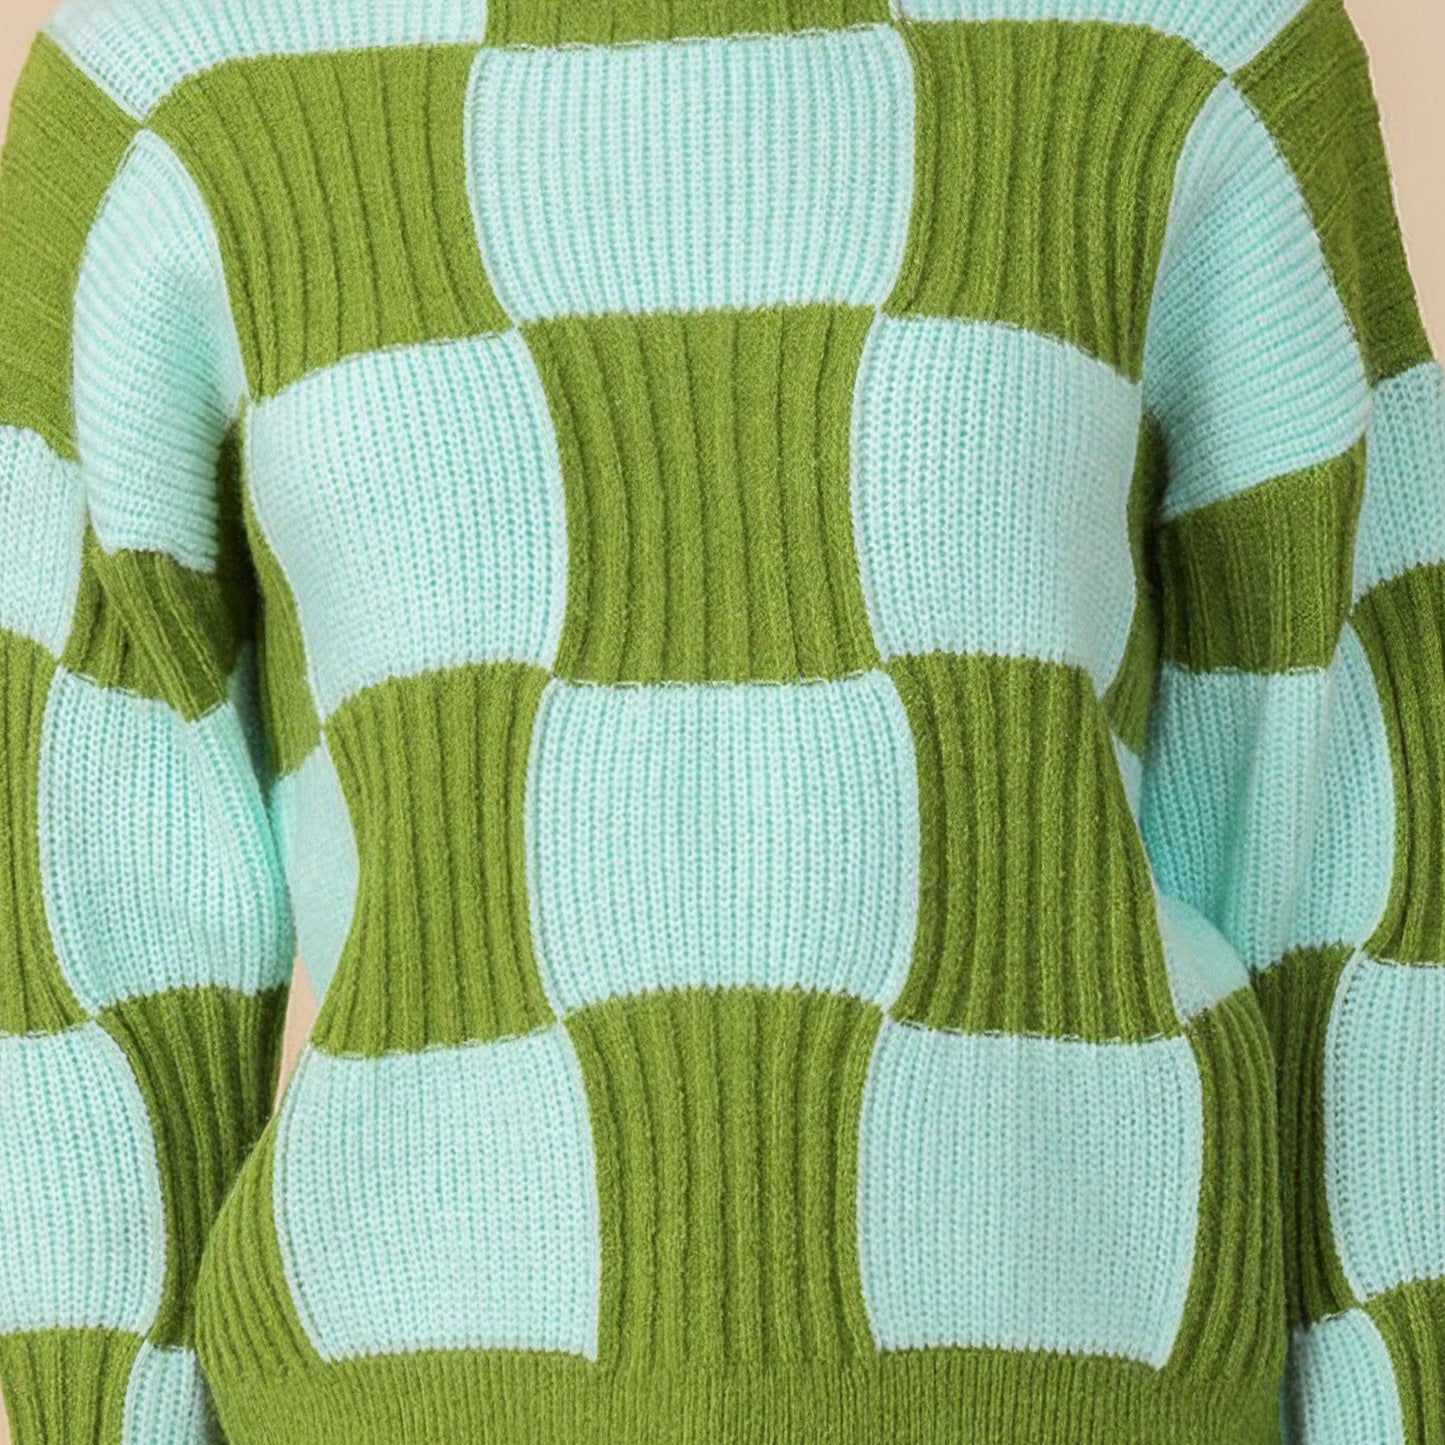 Maren Sweater